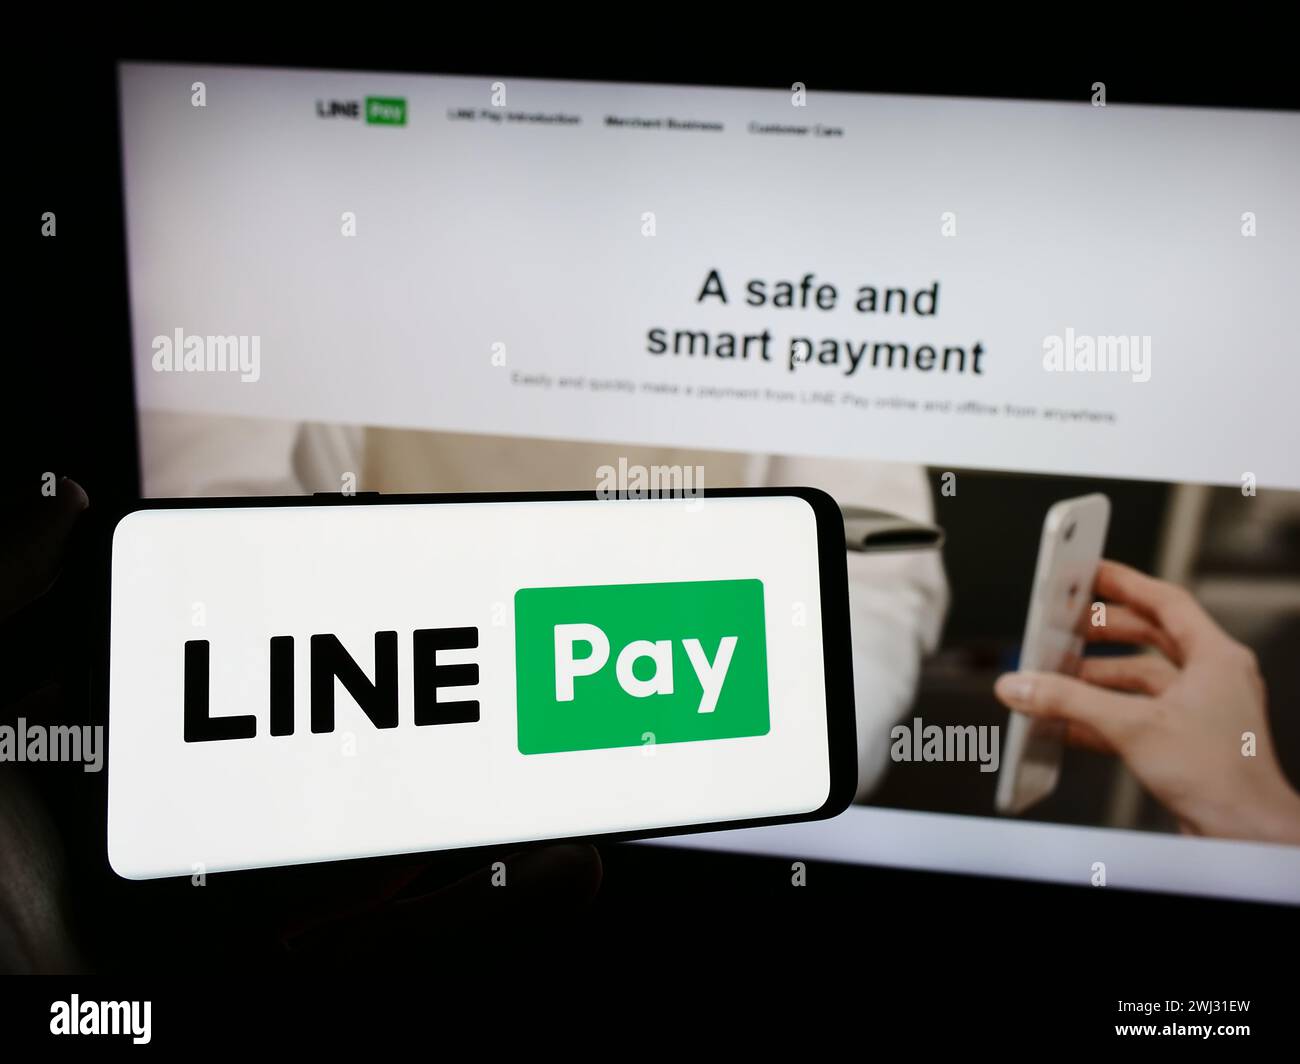 La persona che detiene un cellulare con il logo della società di pagamenti thailandese LINE pay davanti alla pagina web aziendale. Mettere a fuoco il display del telefono. Foto Stock